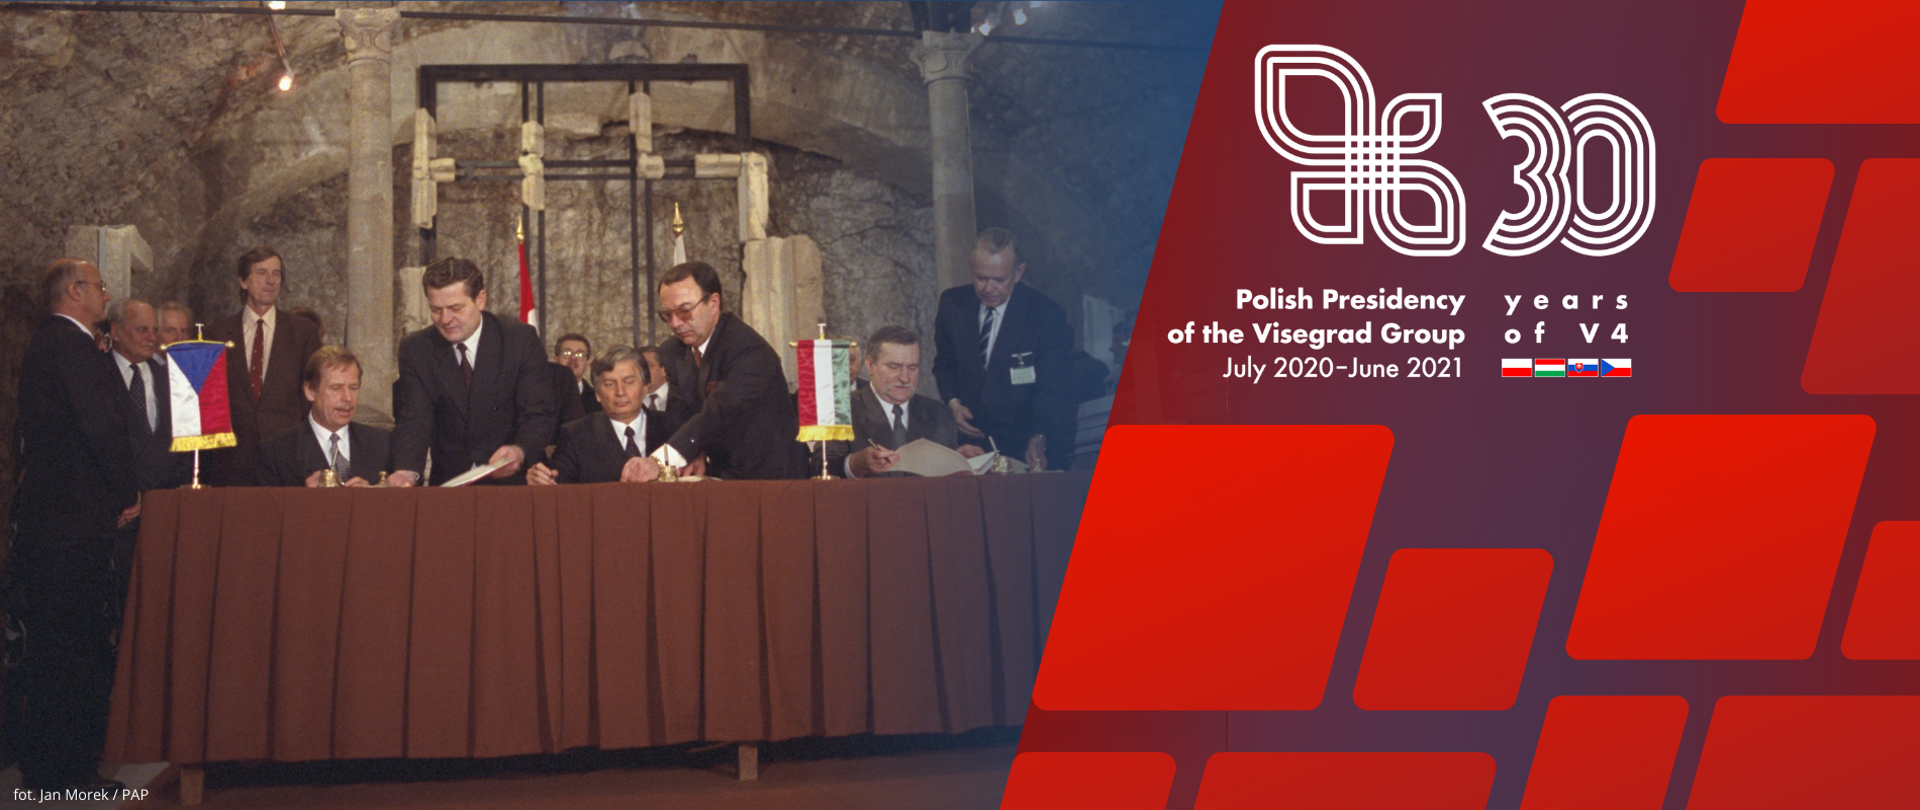 Podpisanie Deklaracji o współpracy Czeskiej i Słowackiej Republiki Federacyjnej, Rzeczypospolitej Polskiej i Republiki Węgierskiej w dążeniu do integracji europejskiej.